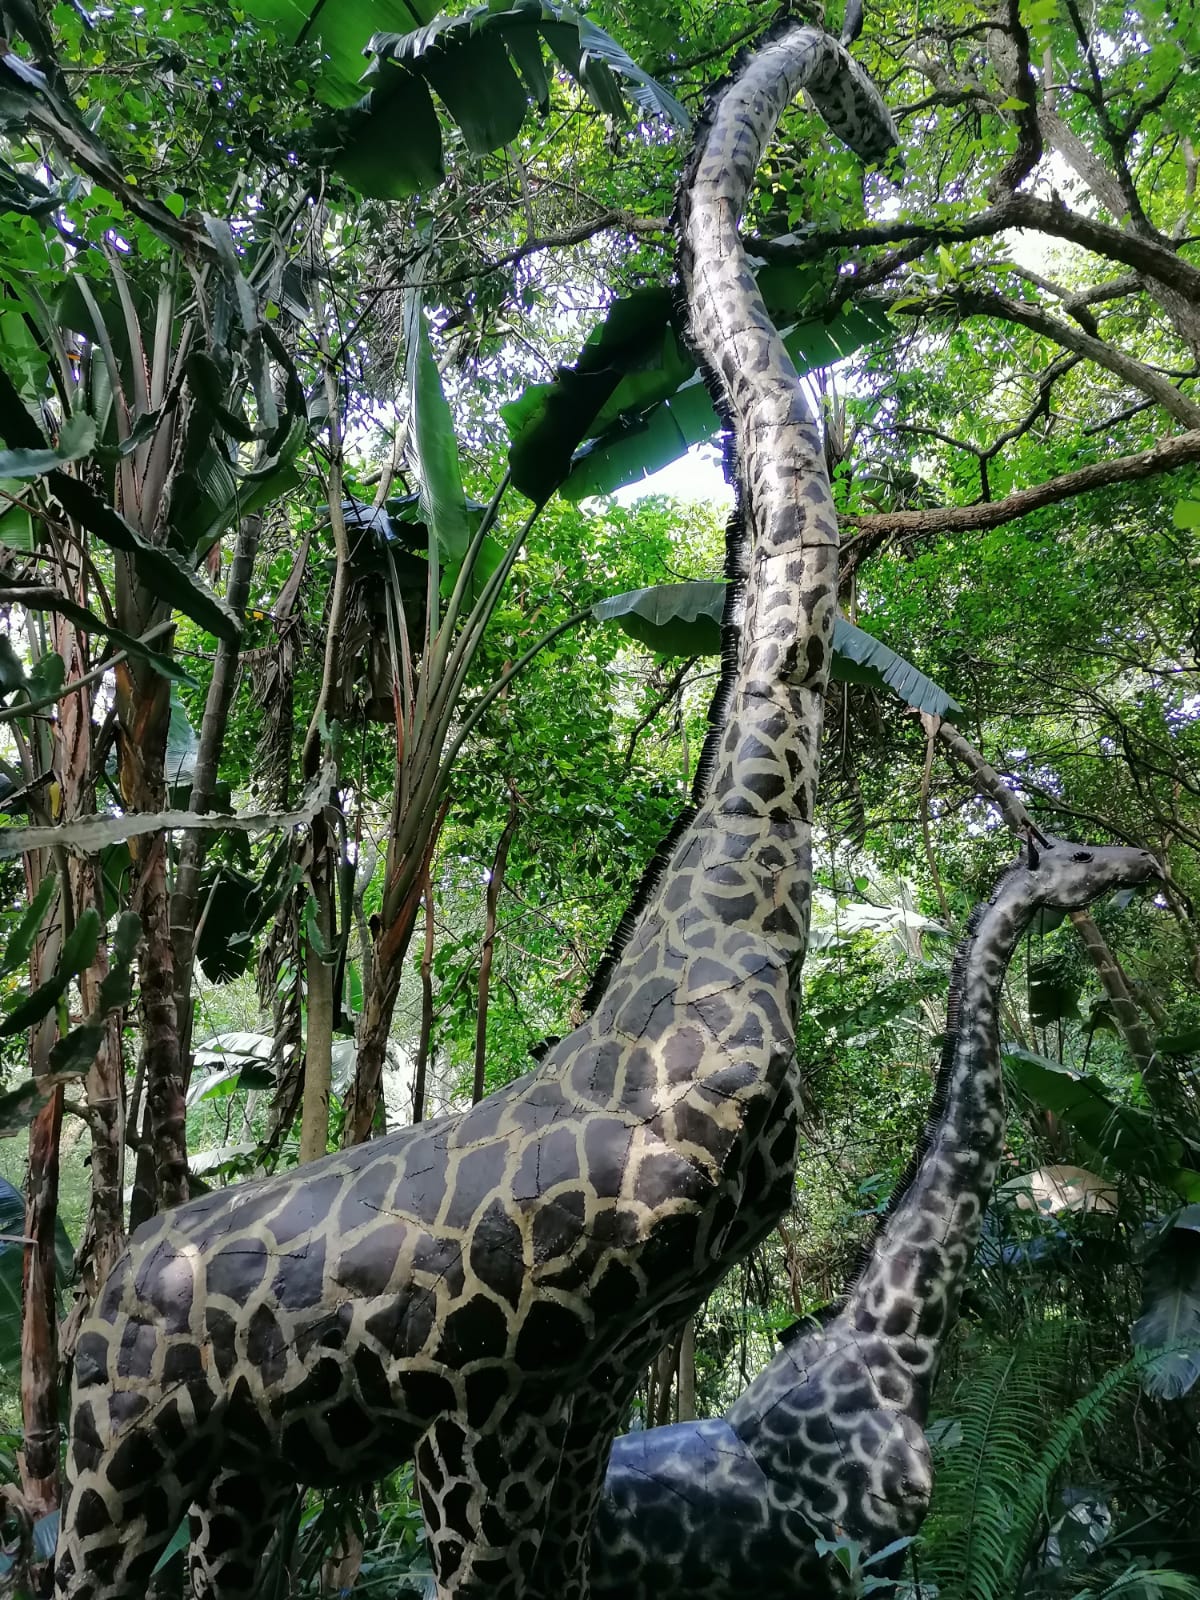 Giraffe sculptures at the Kloof Ammazulu Gardens and Sculpture Precinct